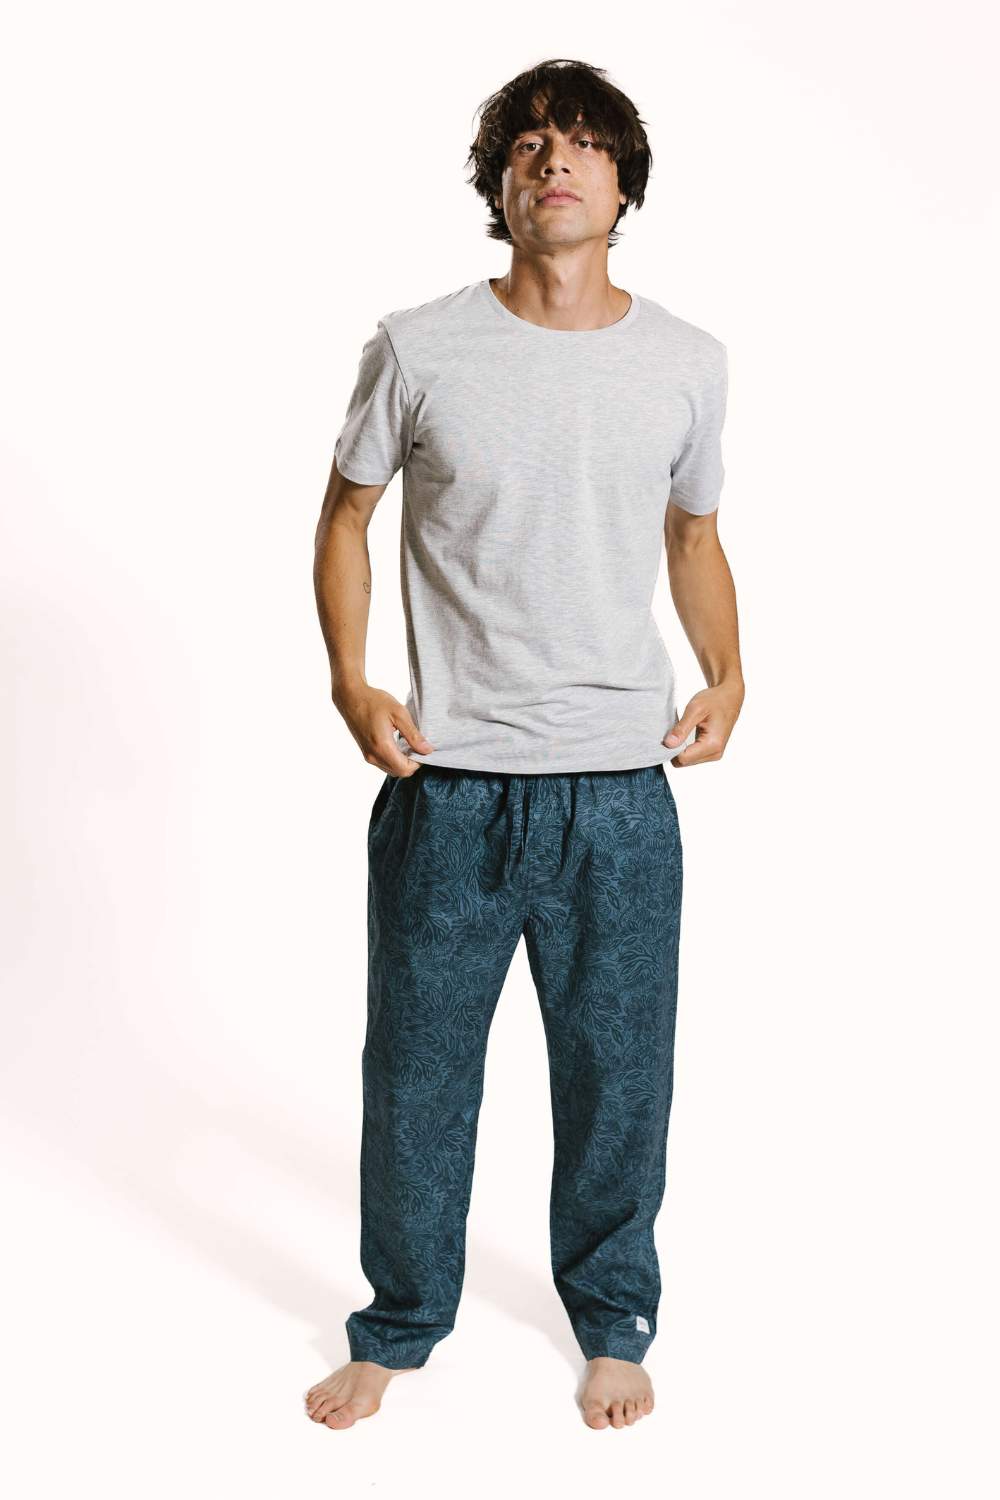 Blue printed midnight garden sleepwear bottoms for men